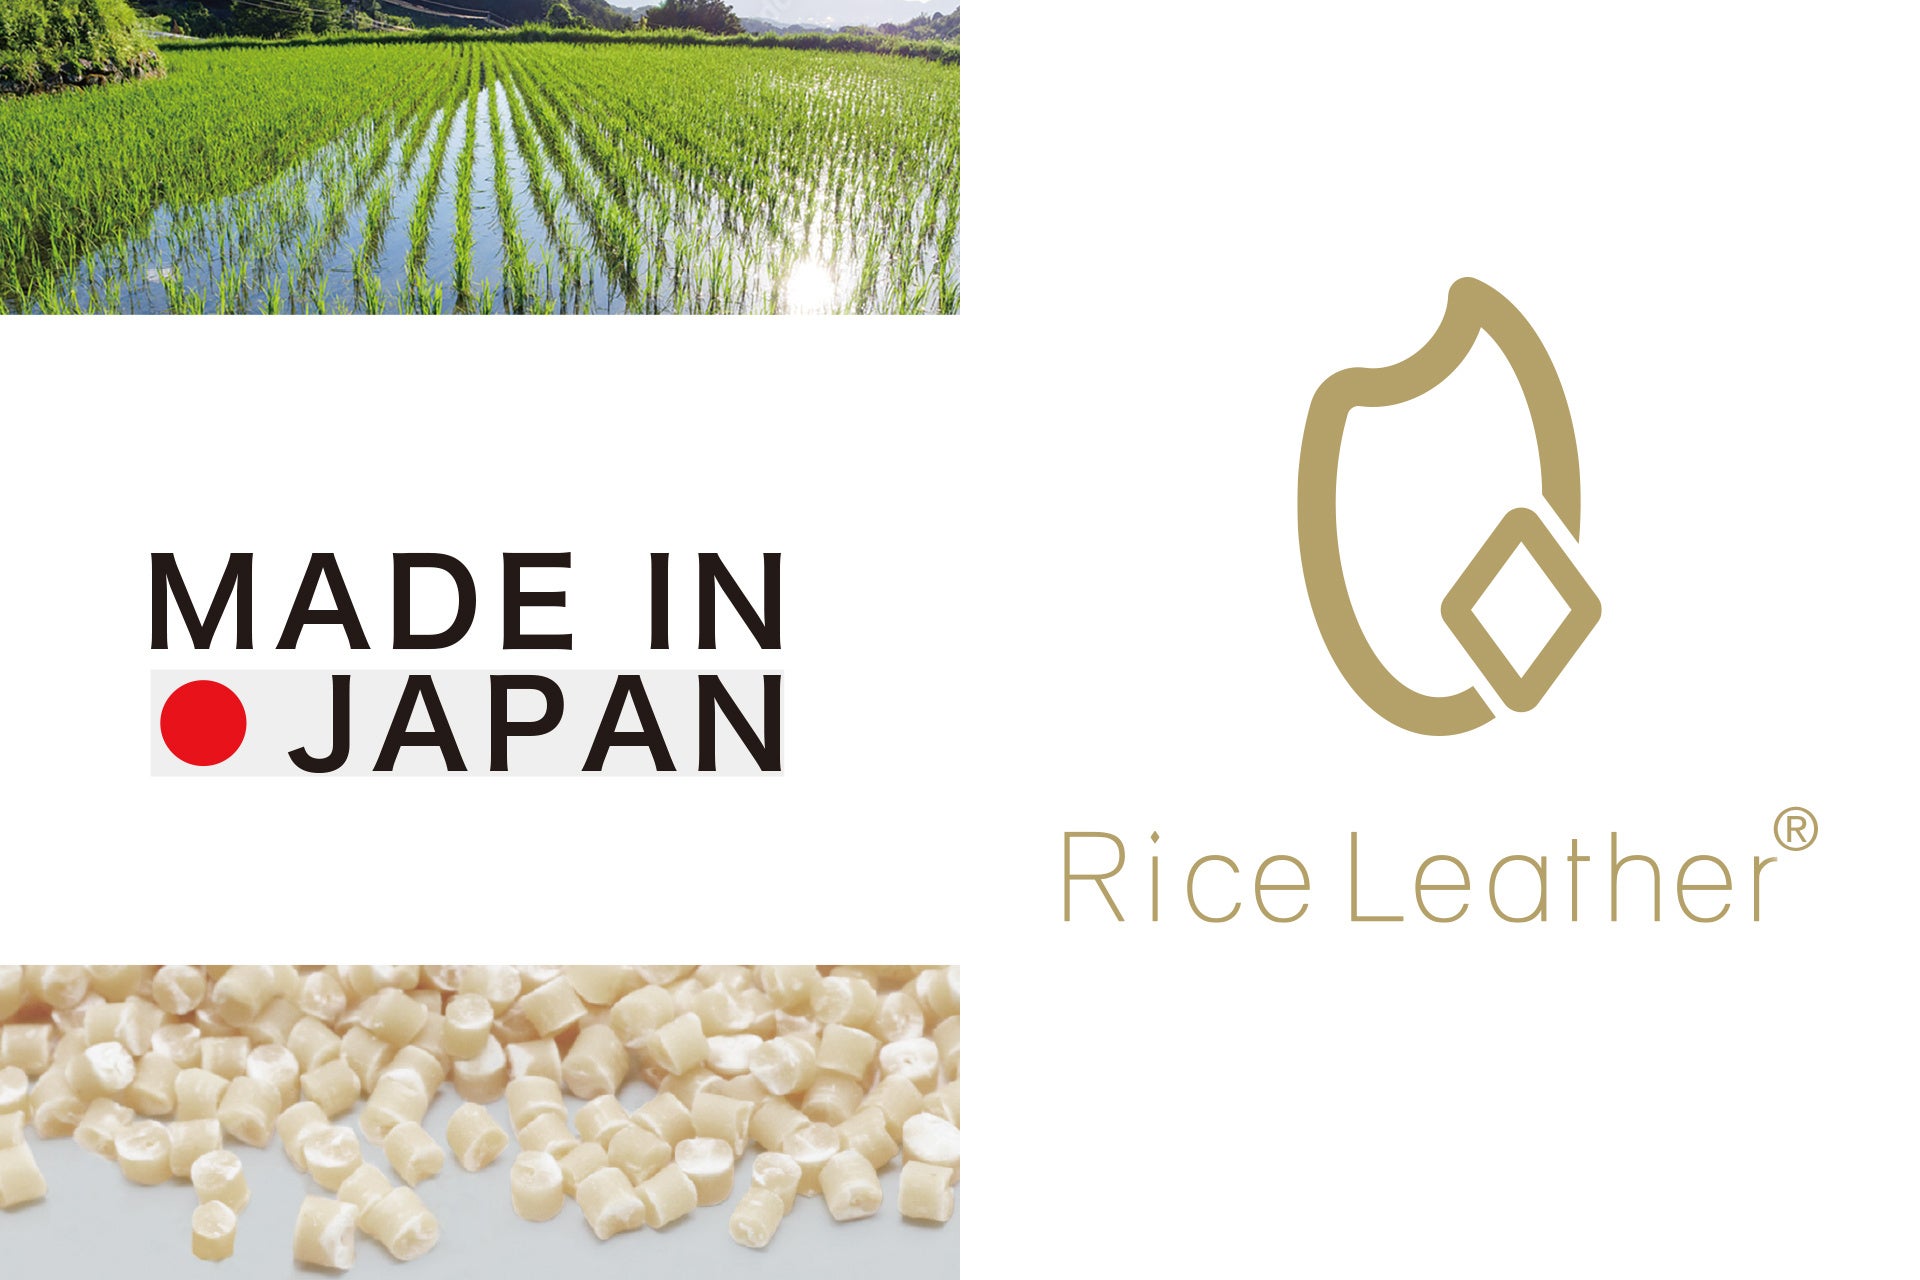 福島県産の米を含む国産ヴィーガンレザー「Rice Leather™️」を使用した世界初のアパレル商品を開発！福島美少女図鑑、MA3.0、コバオリ株式会社による共同プロジェクト始動のサブ画像3